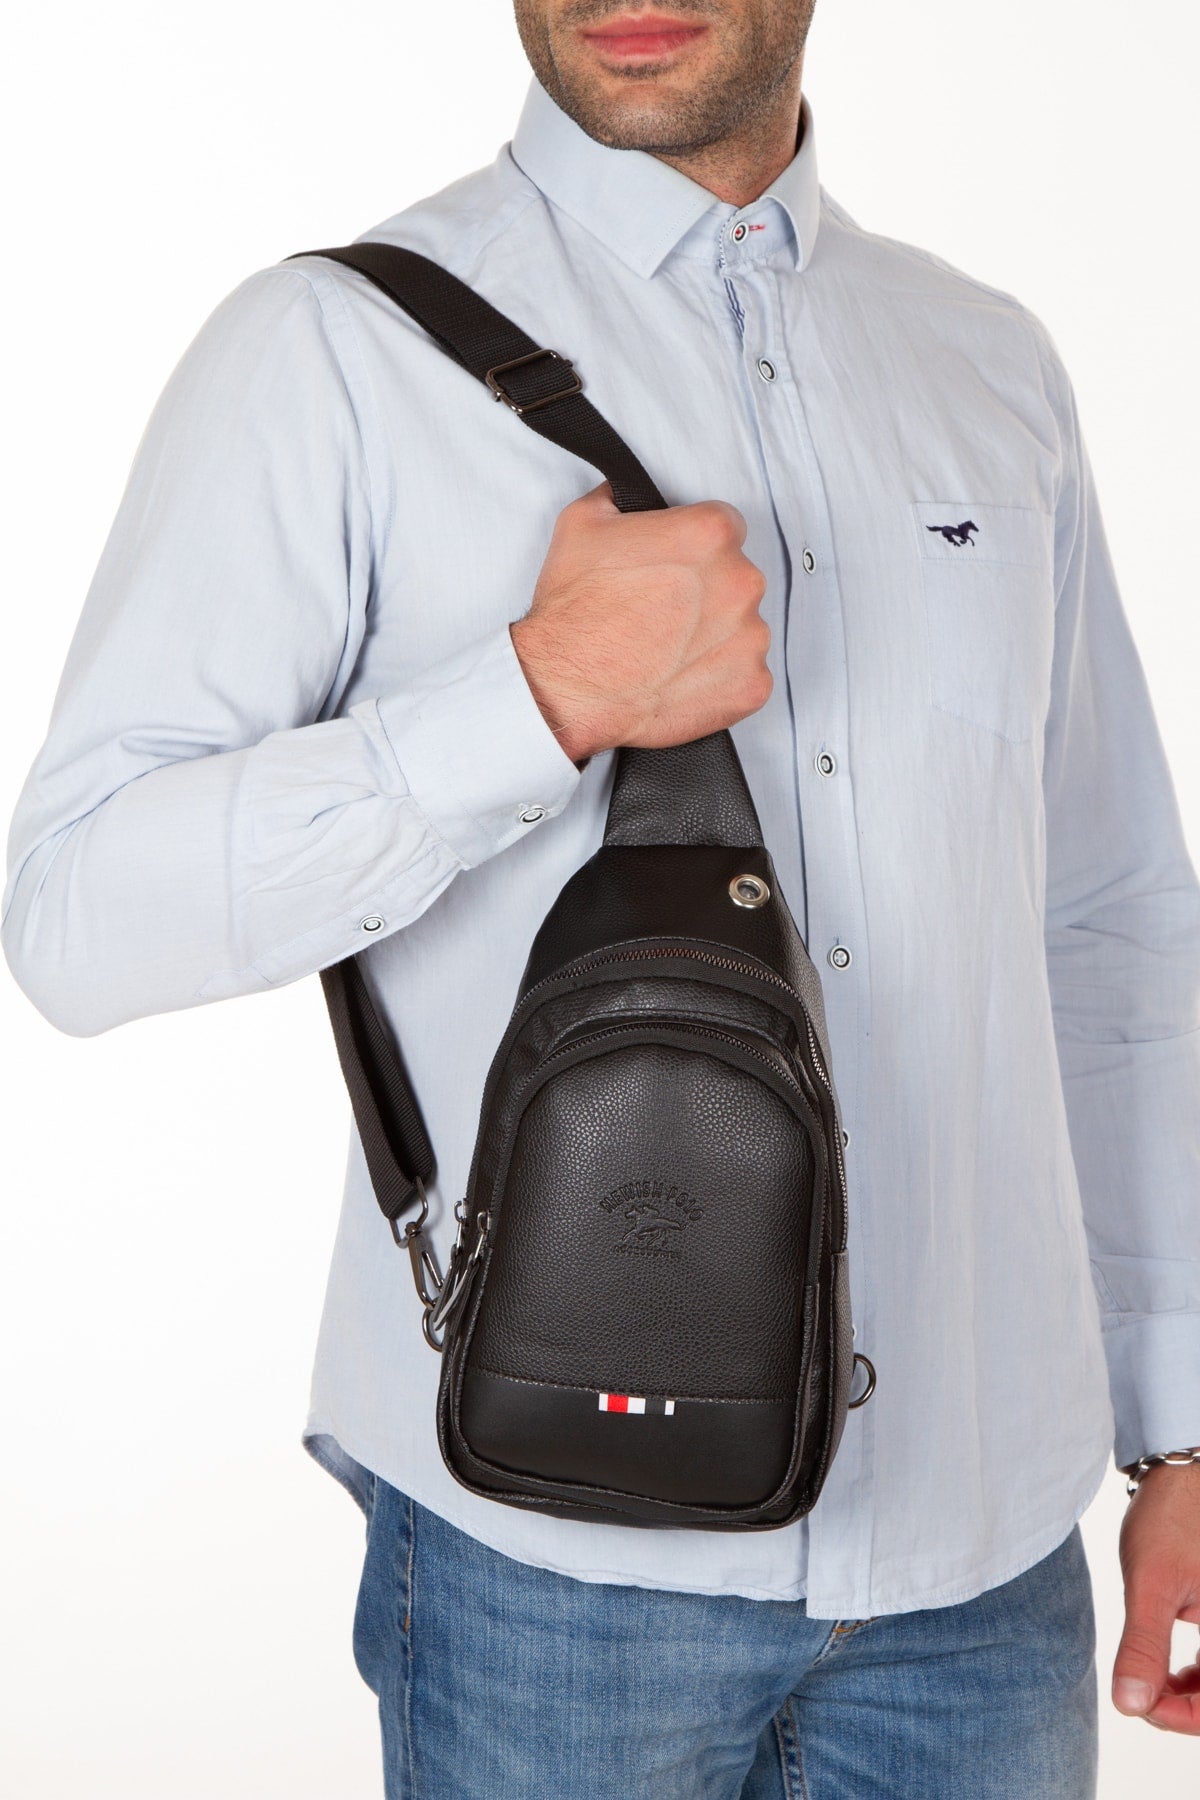 Black Unisex Cross Adjustable Strap Shoulder Bag Lt-6547